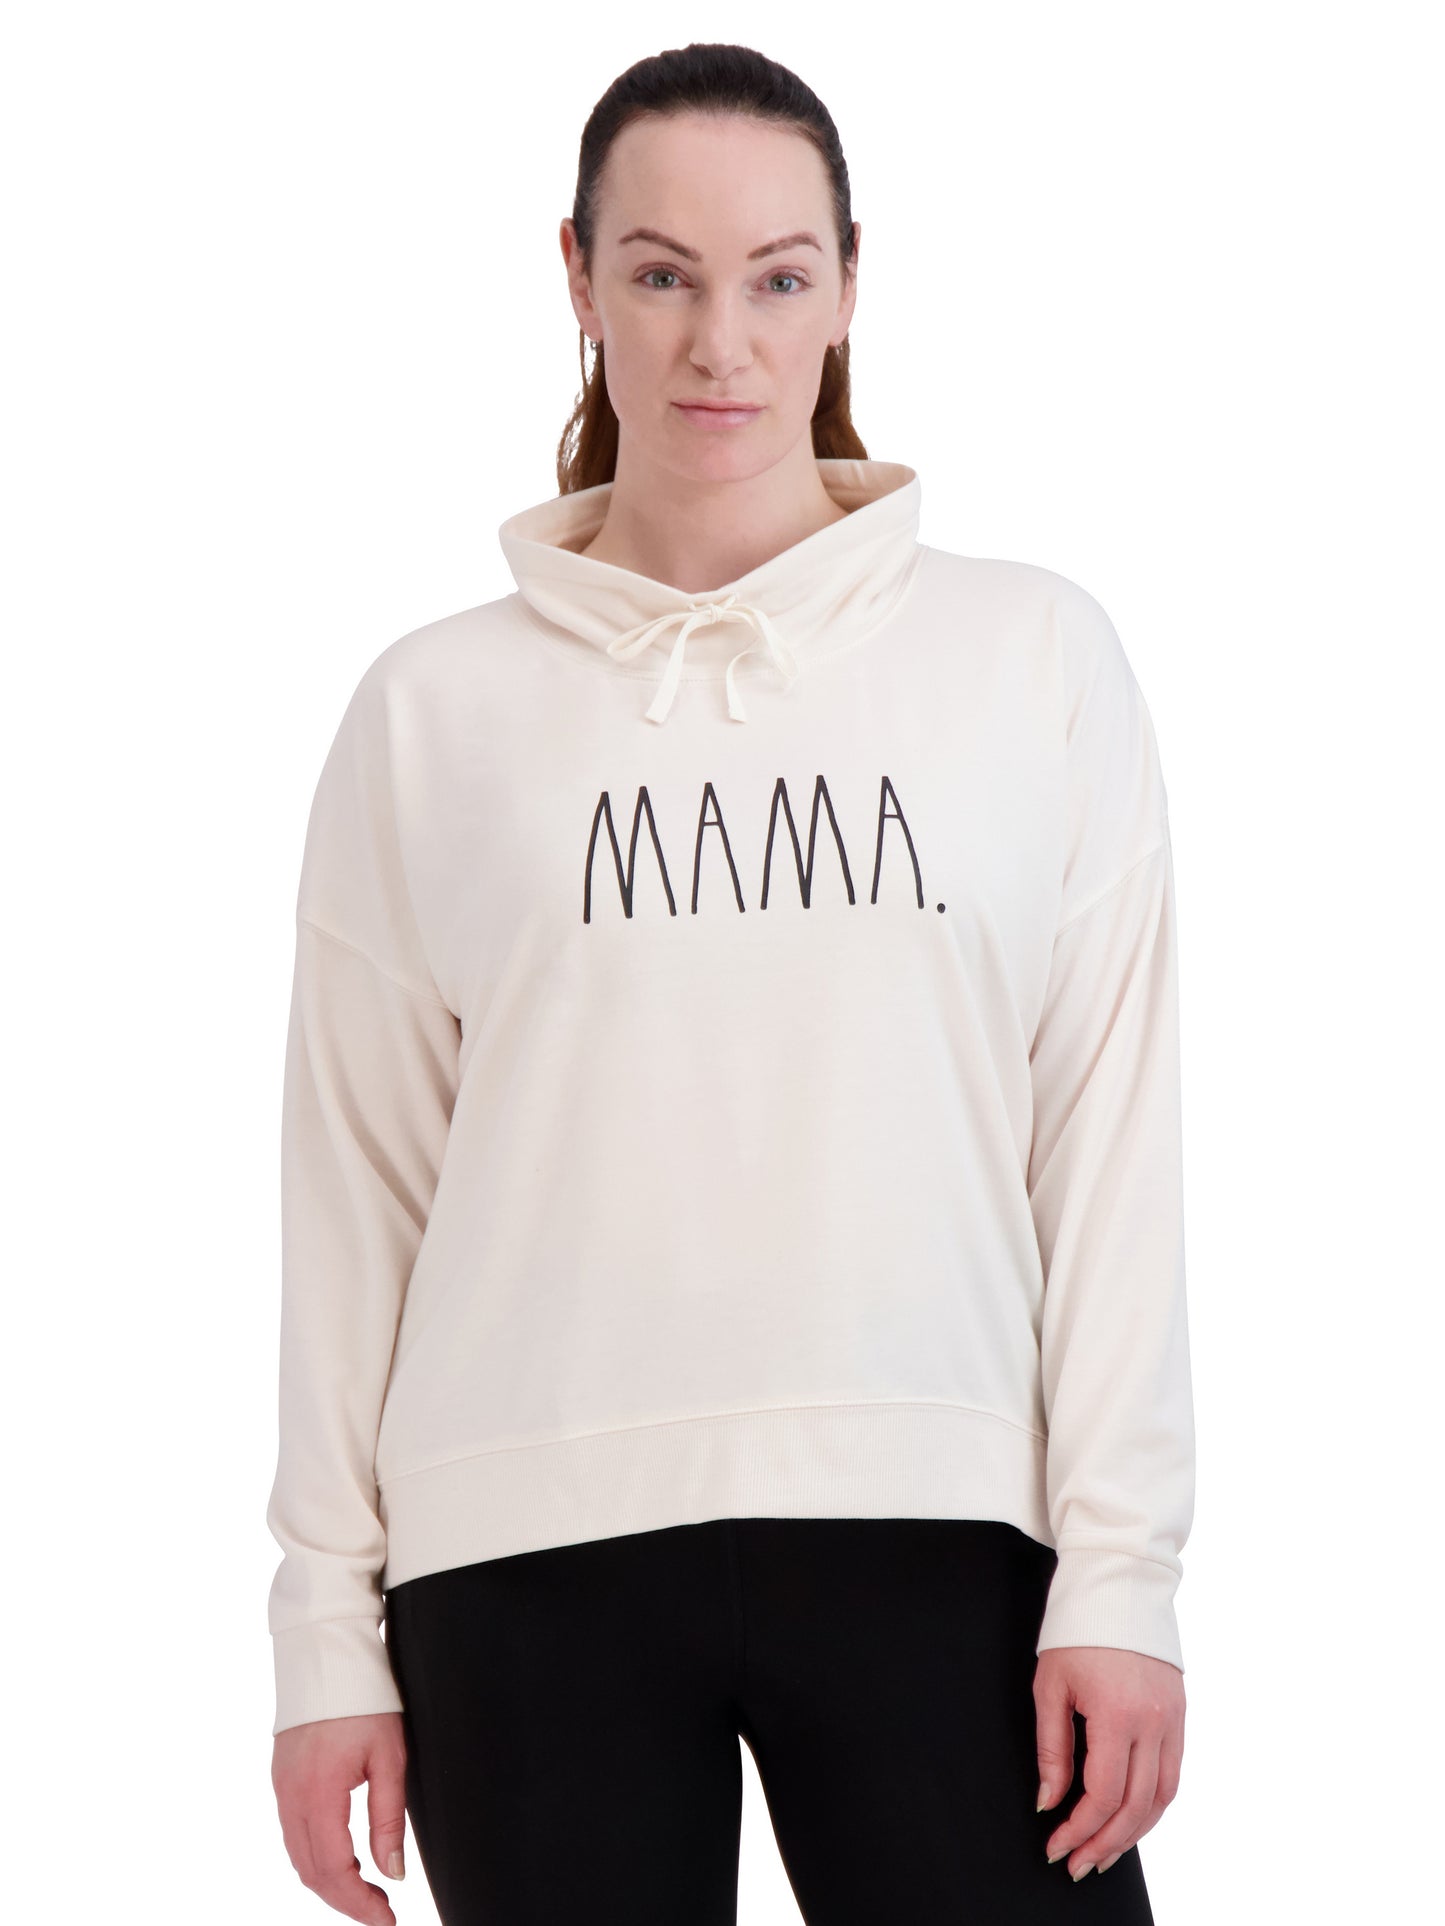 Women's "MAMA" Funnel Neck Sweatshirt - Rae Dunn Wear - W Sweatshirt